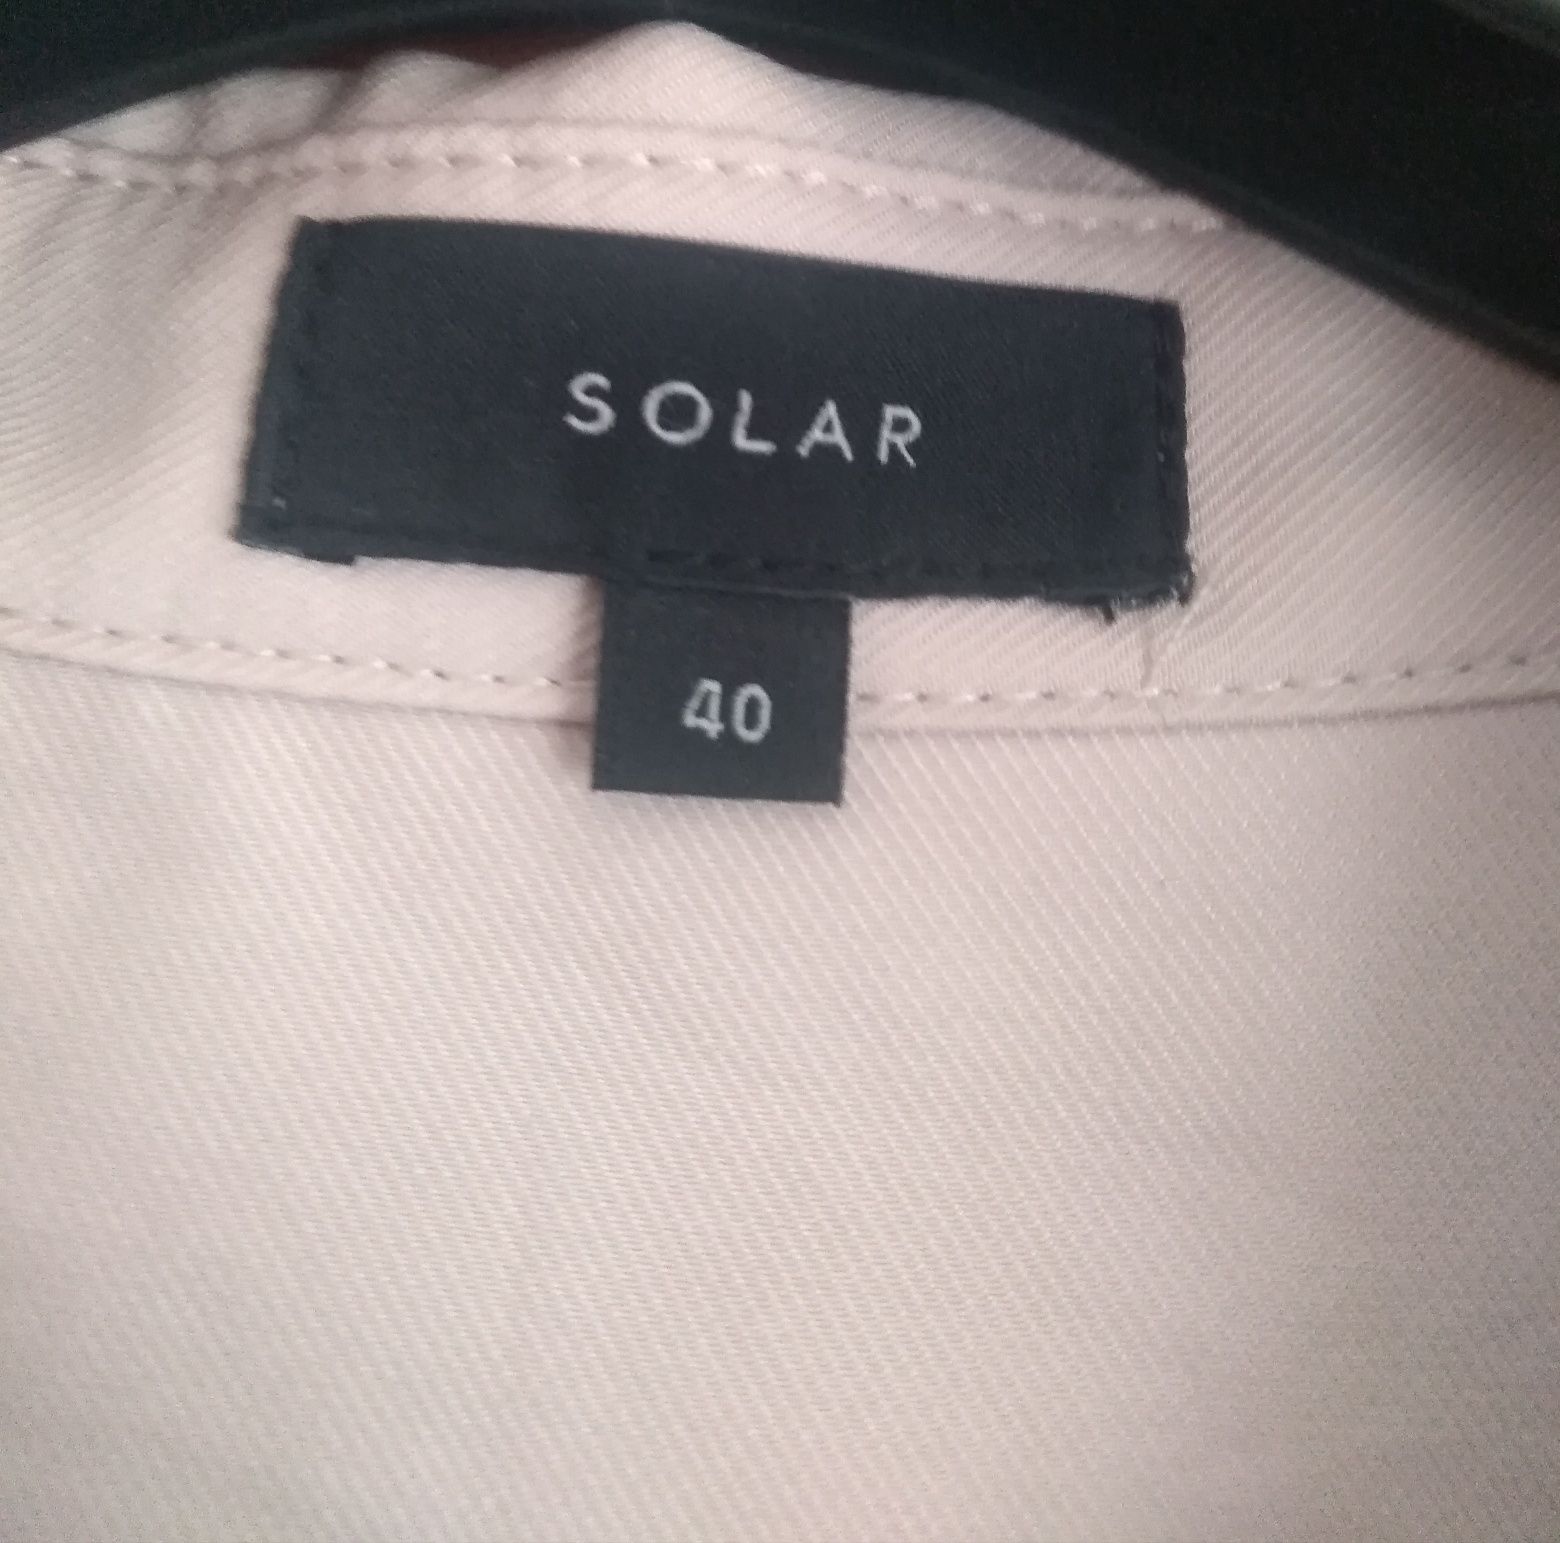 Damska koszula solar w rozmiarze 40.